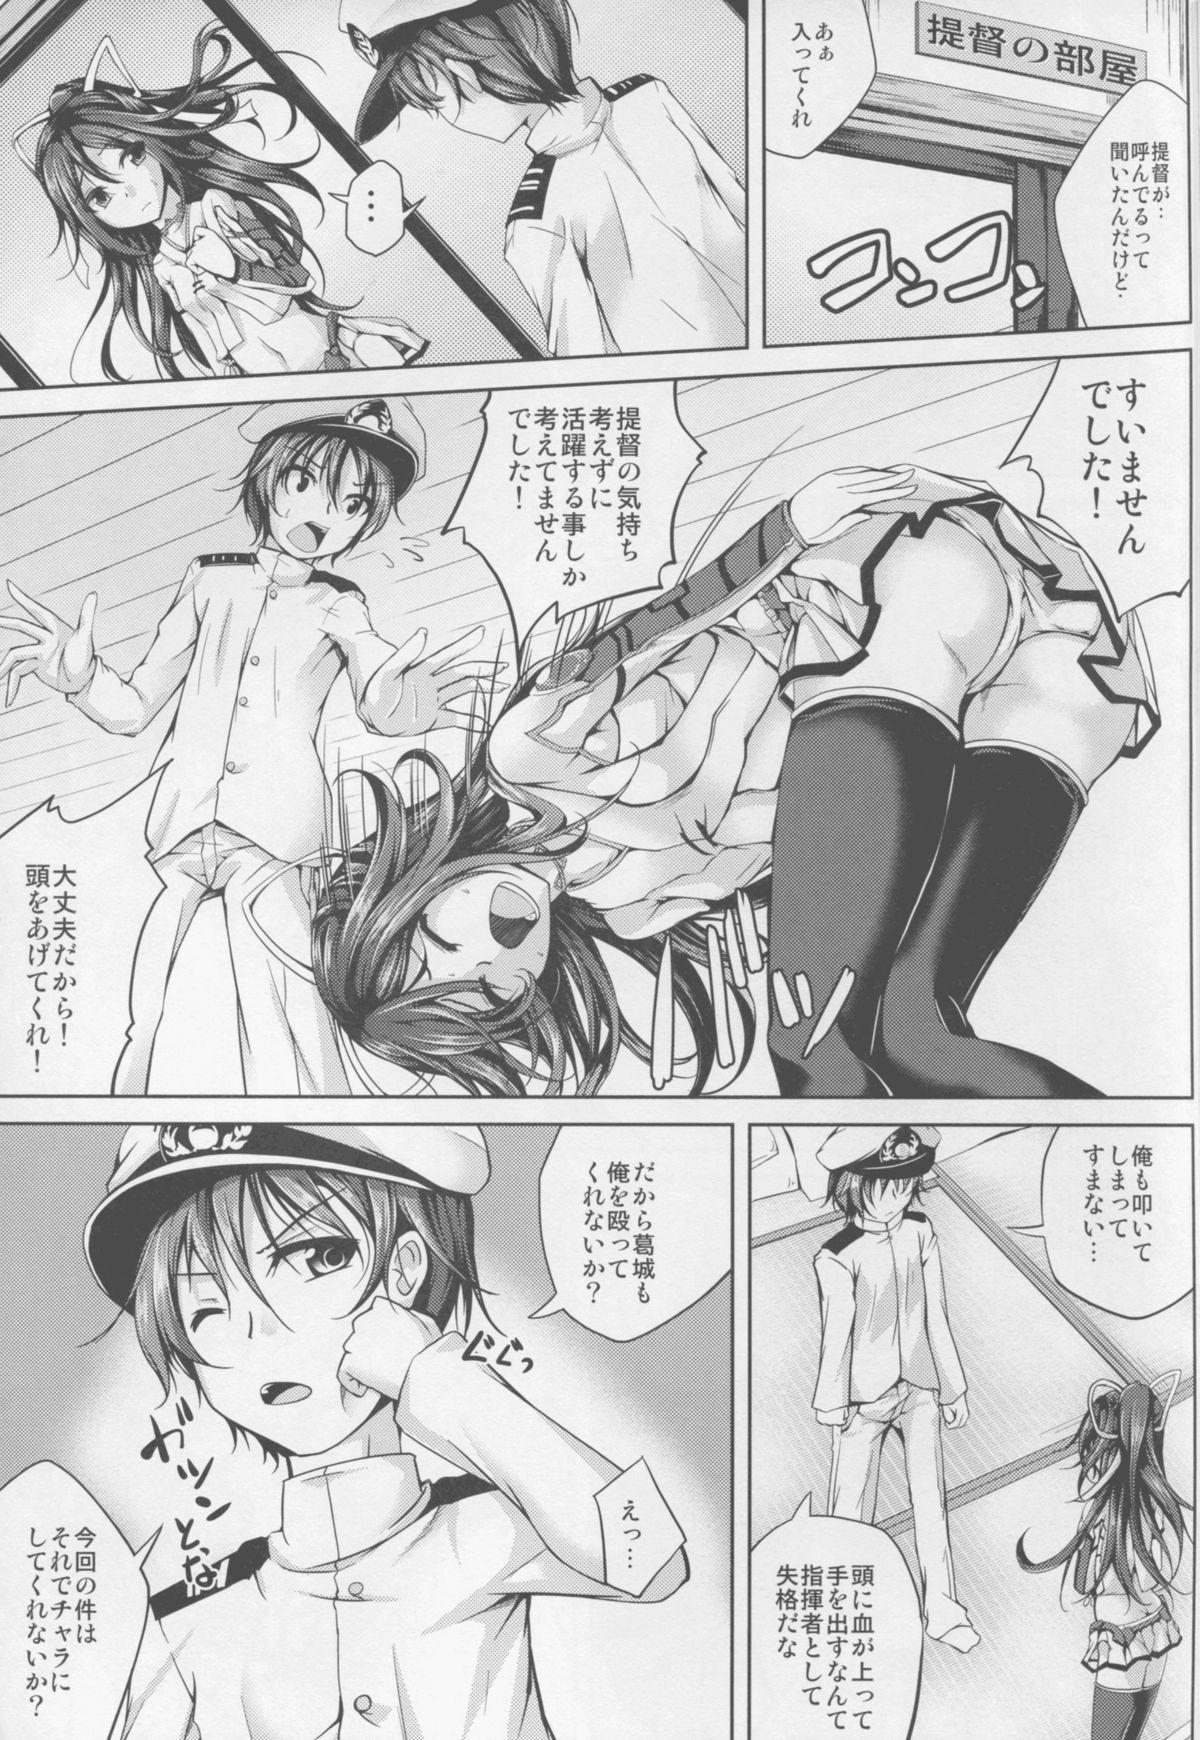 Boss Koiiro Moyou 13 - Kantai collection Cruising - Page 9